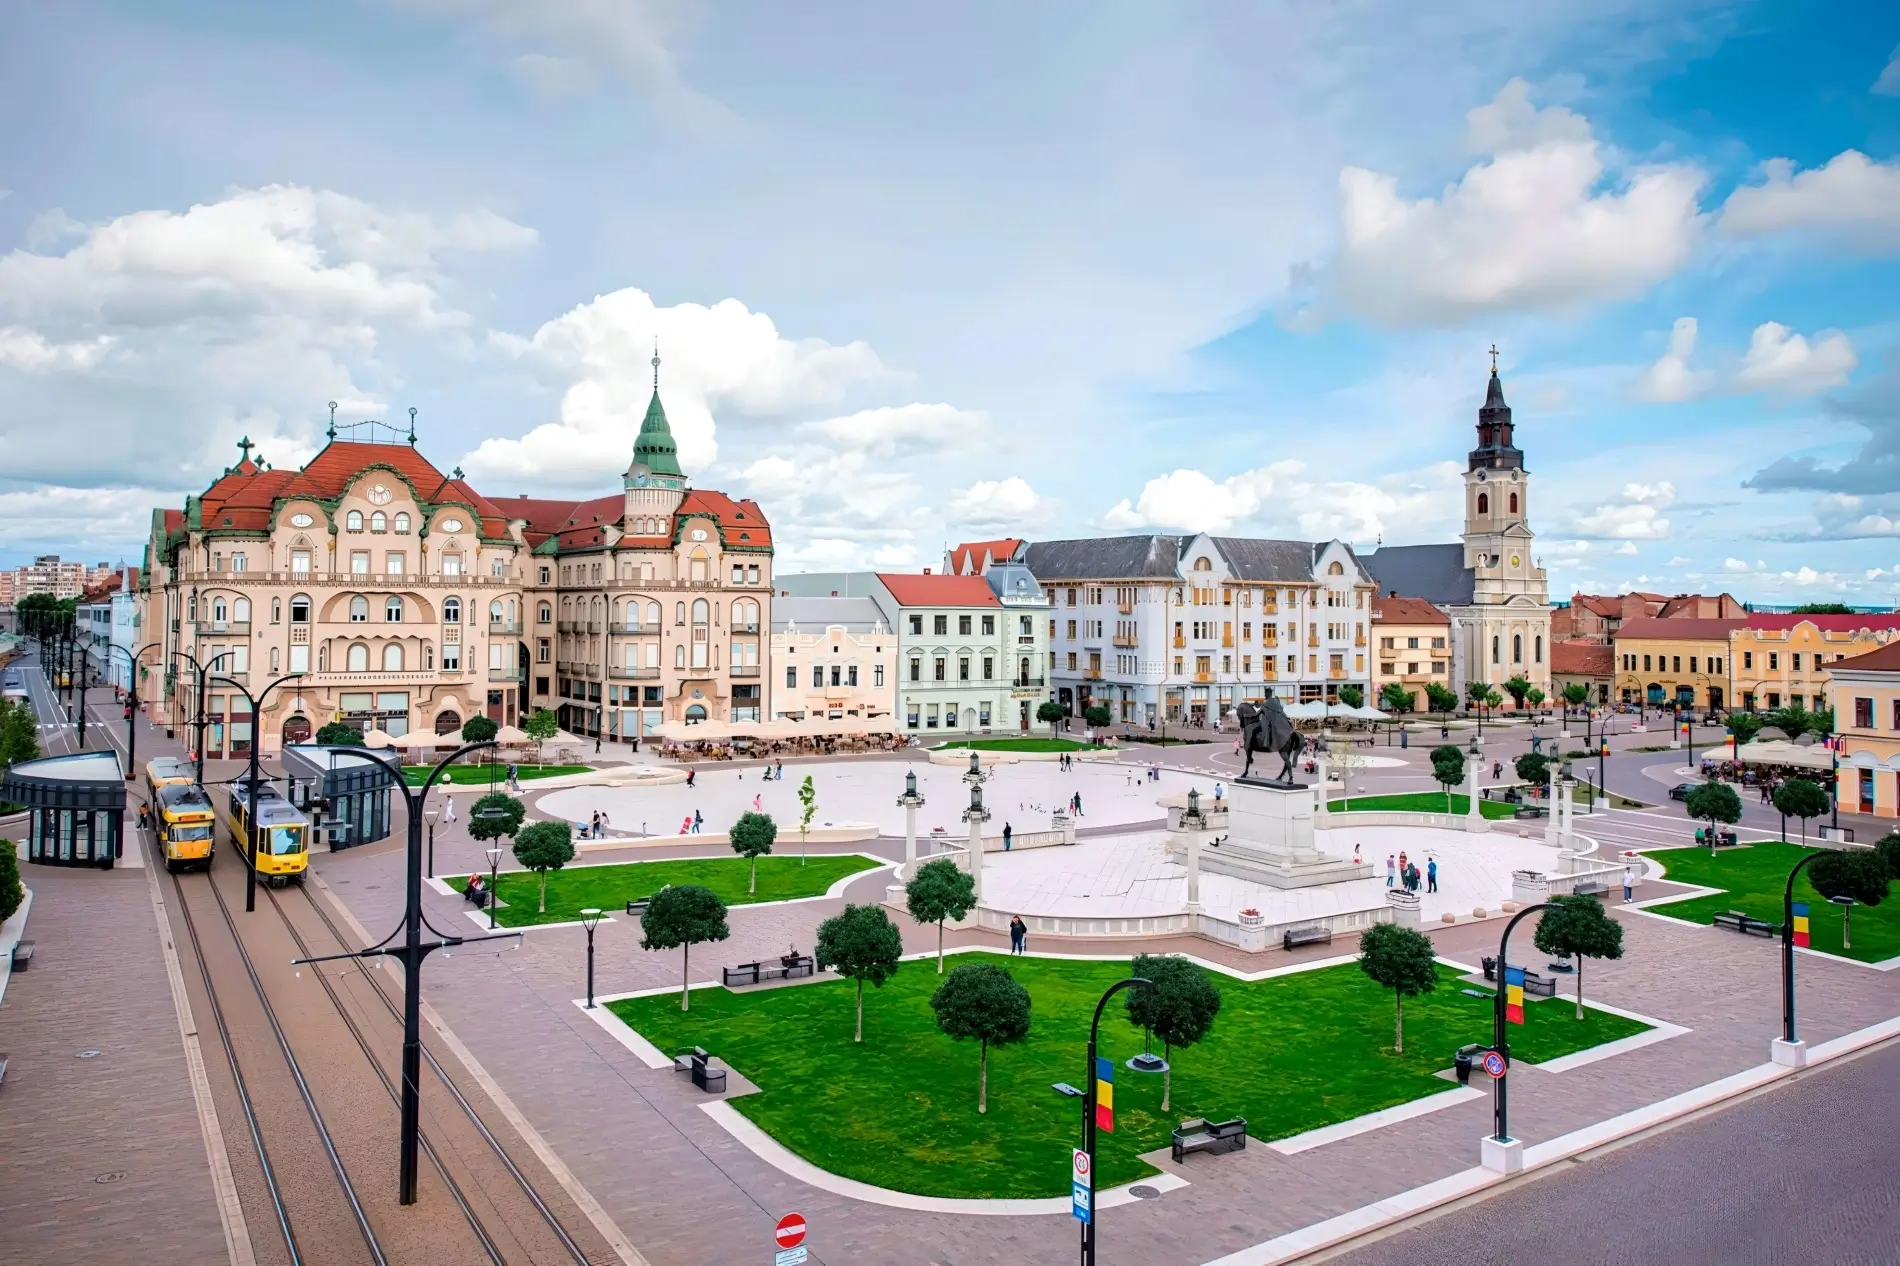 Obiective turistice Oradea